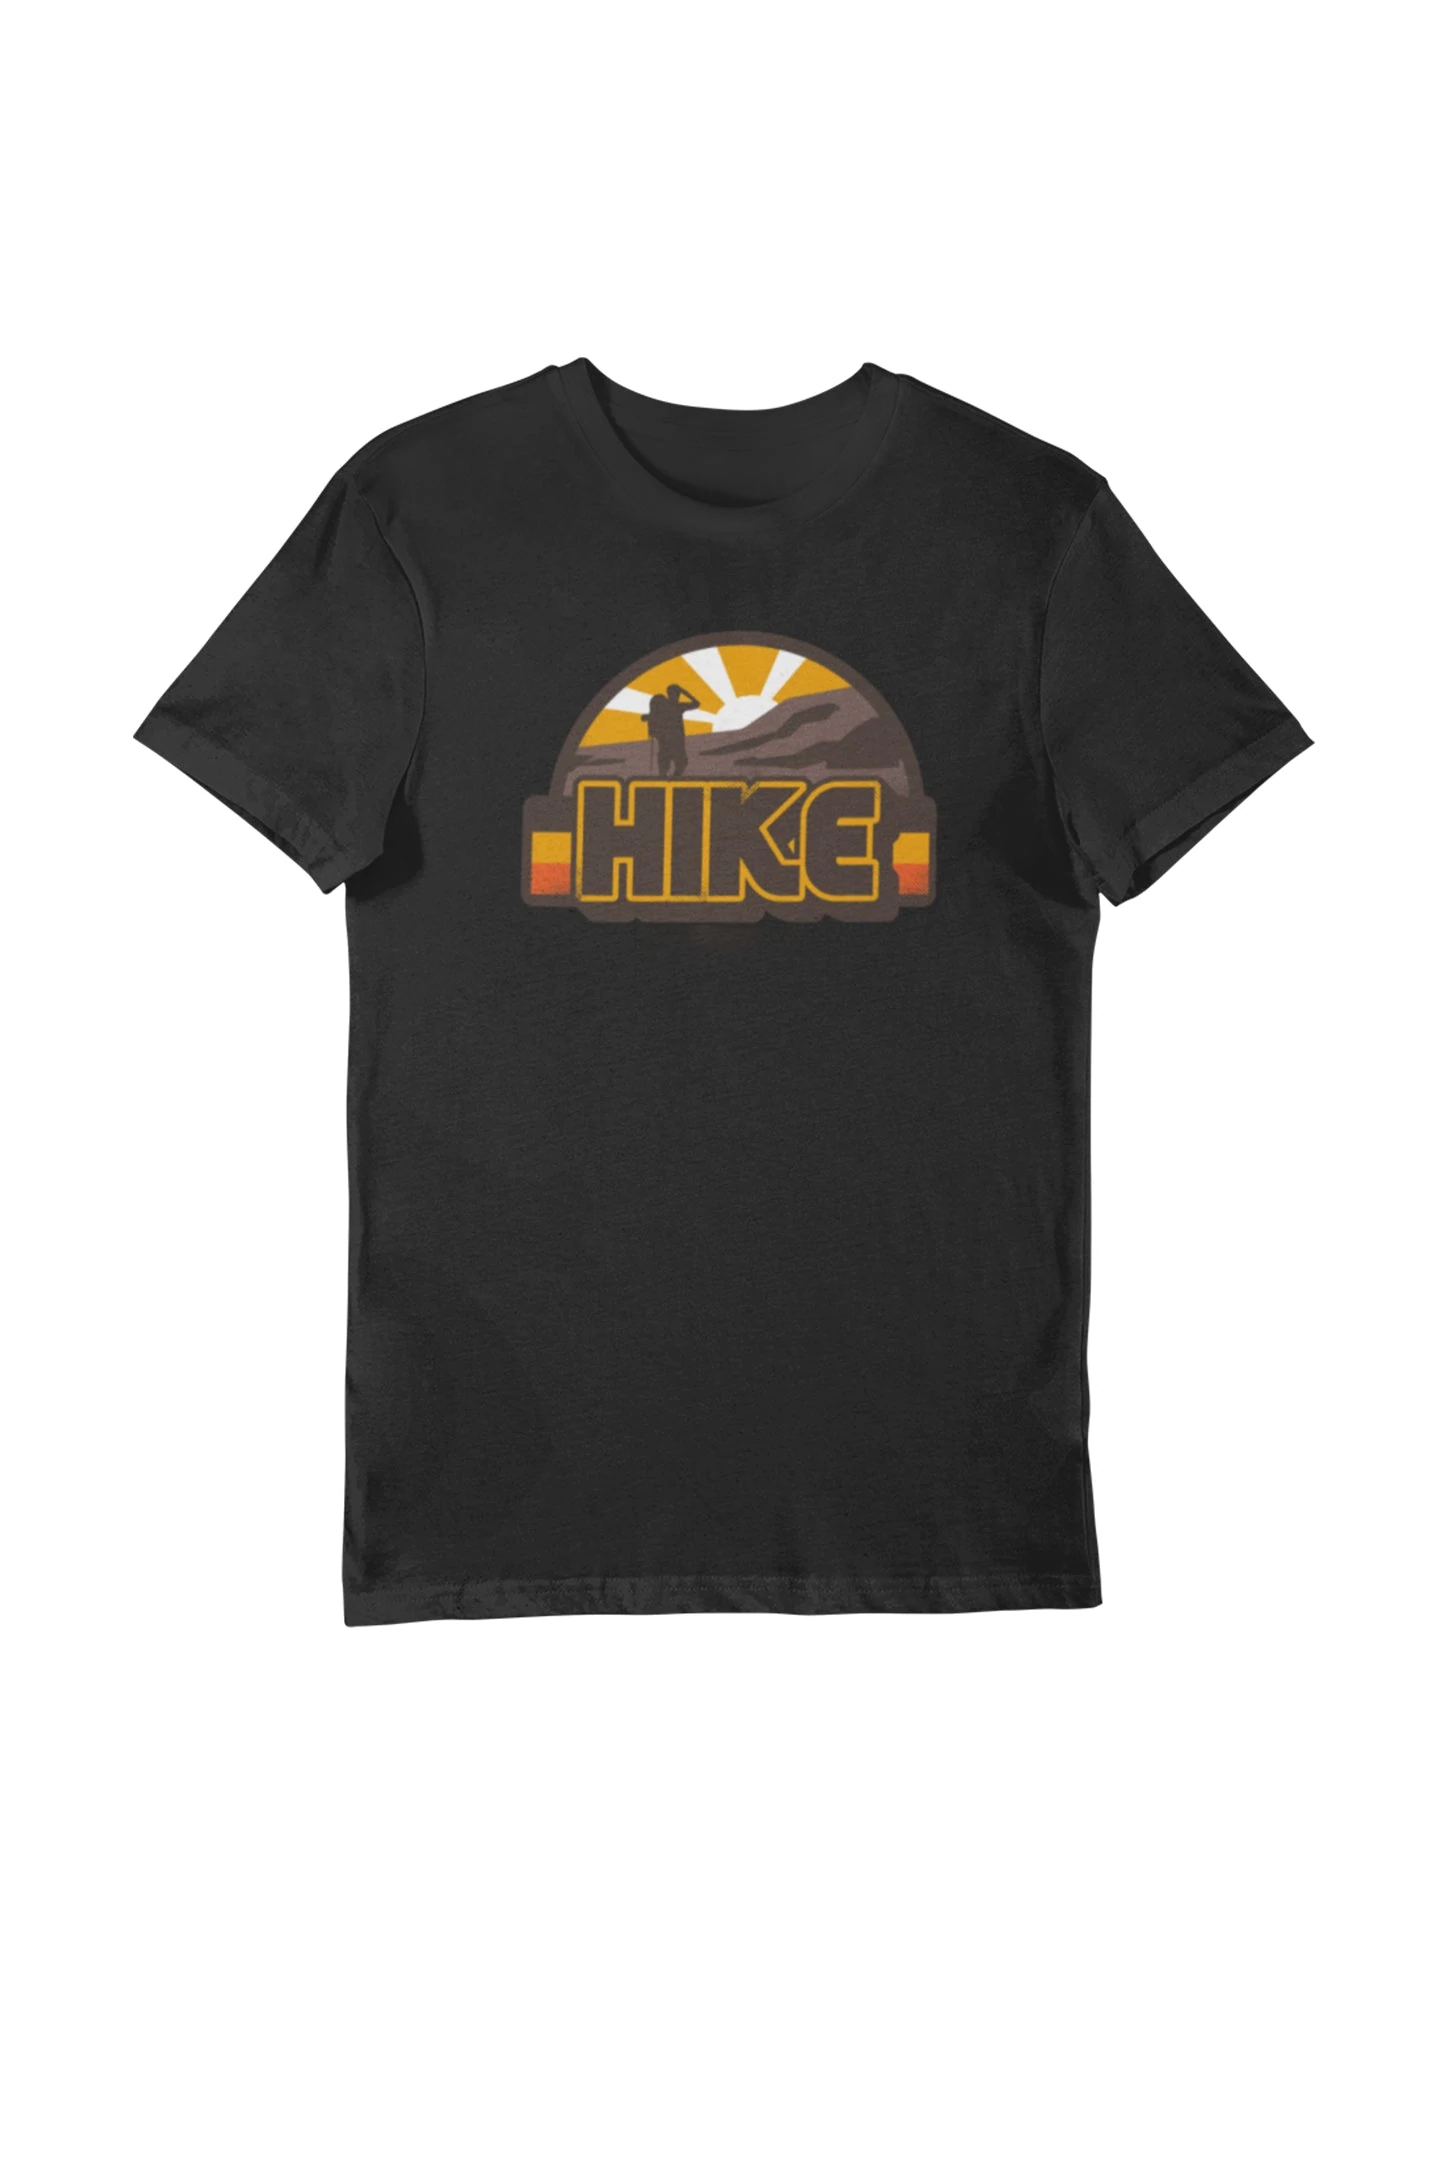 Hike - Men's